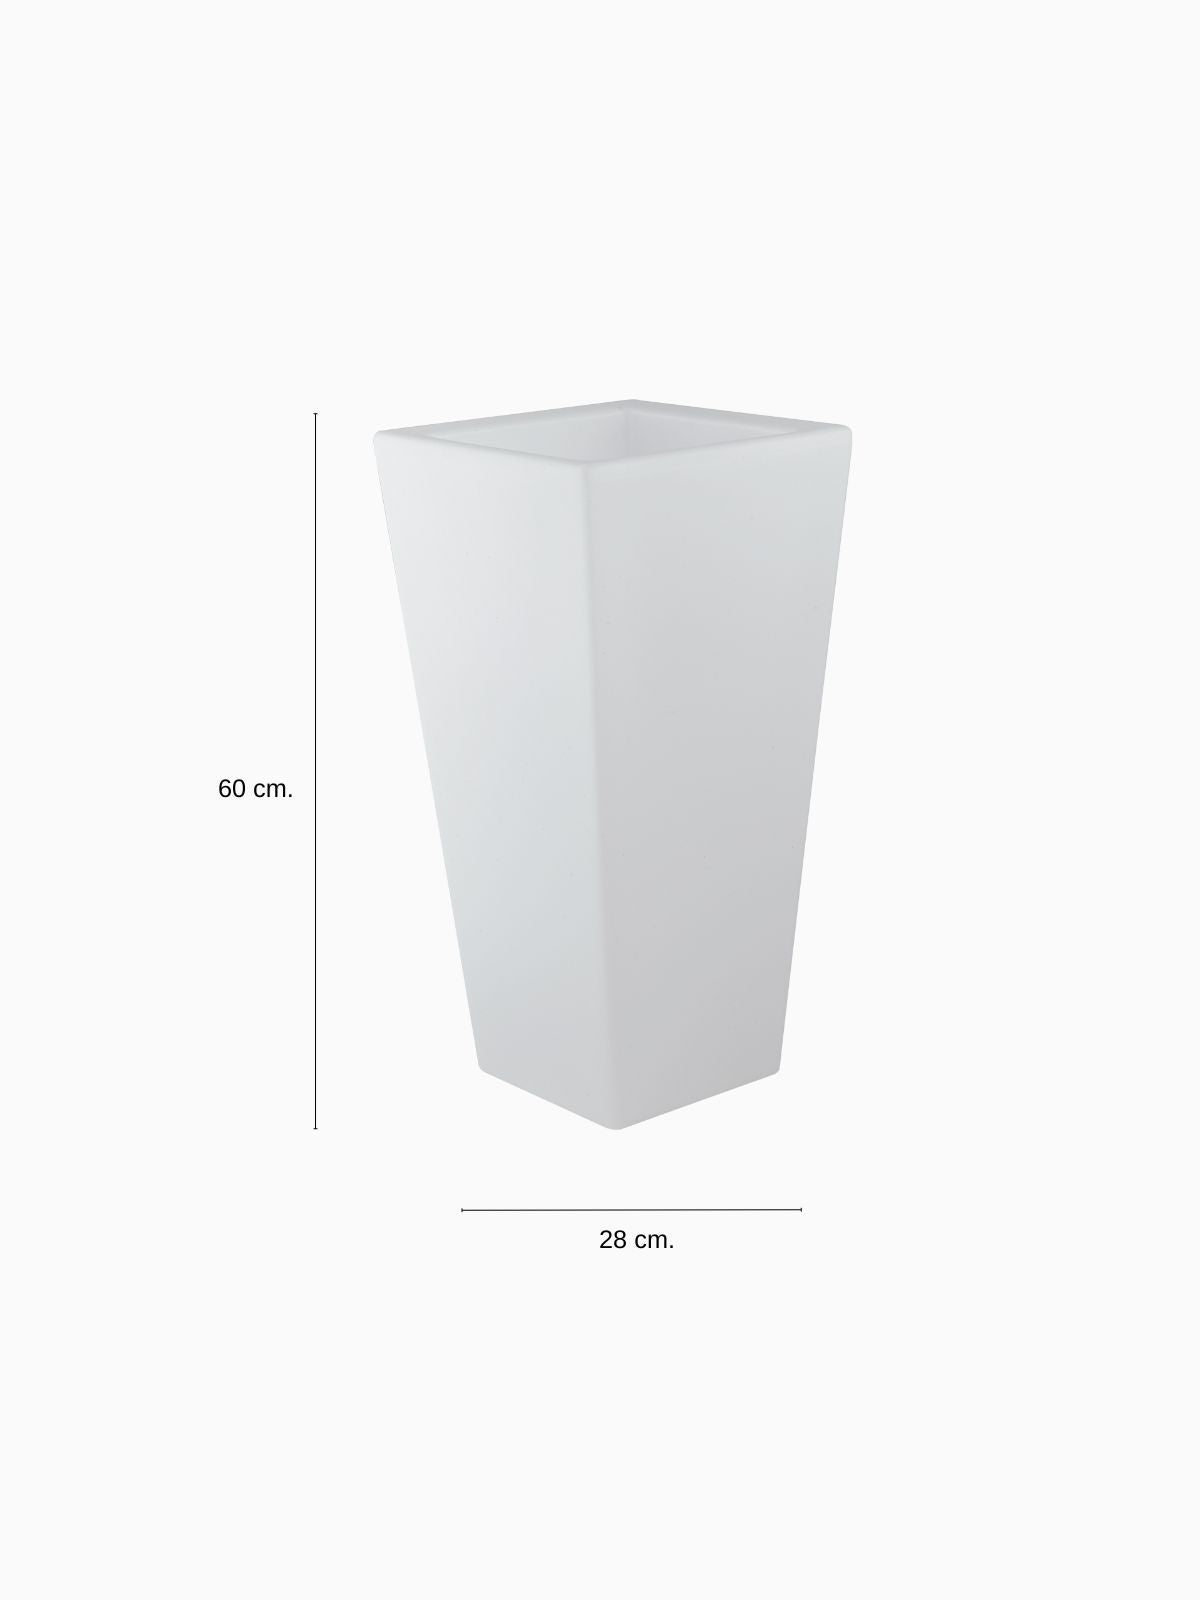 Vaso da esterno quadrato a LED Geco in polietilene, colore bianco 60 cm.-4